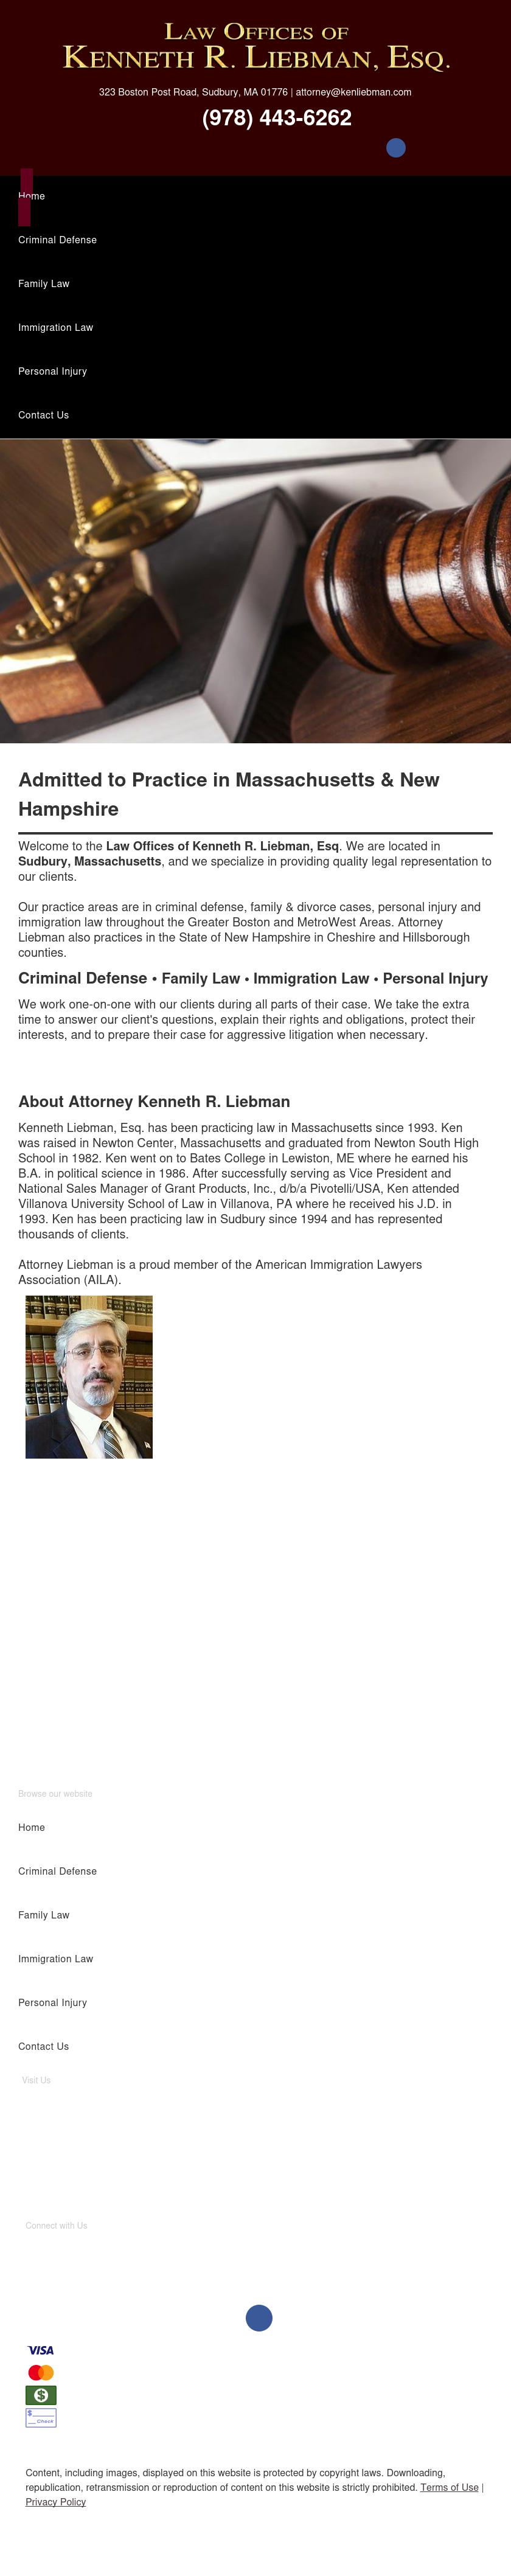 Law Offices of Kenneth R. Liebman, Esq. - Sudbury MA Lawyers